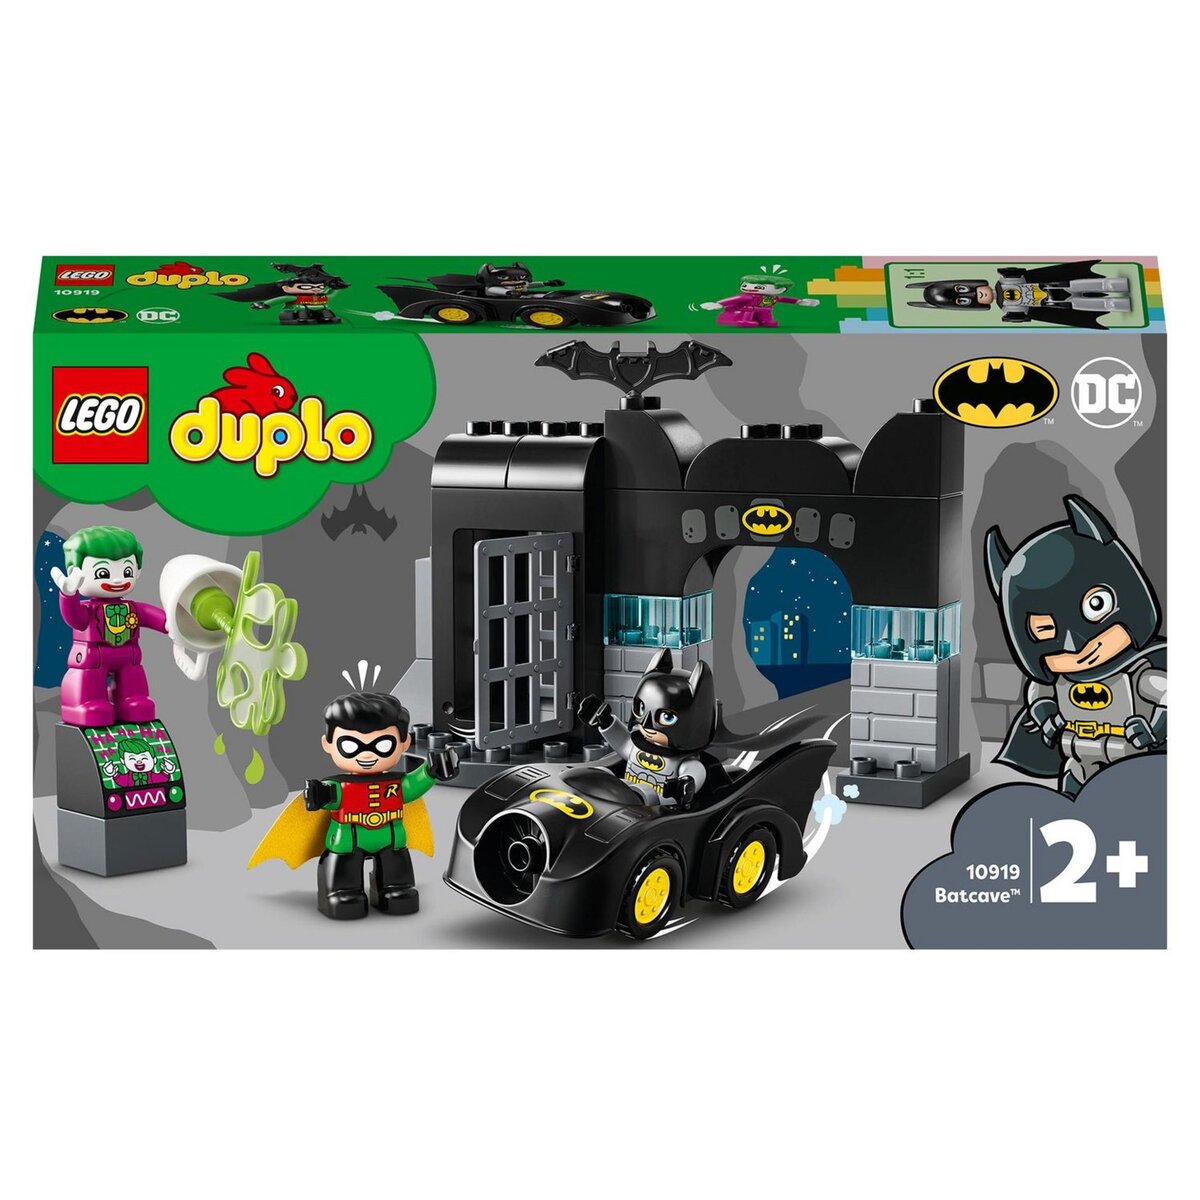 LEGO DUPLO 10919 Super-Héros DC Batman - La Batcave